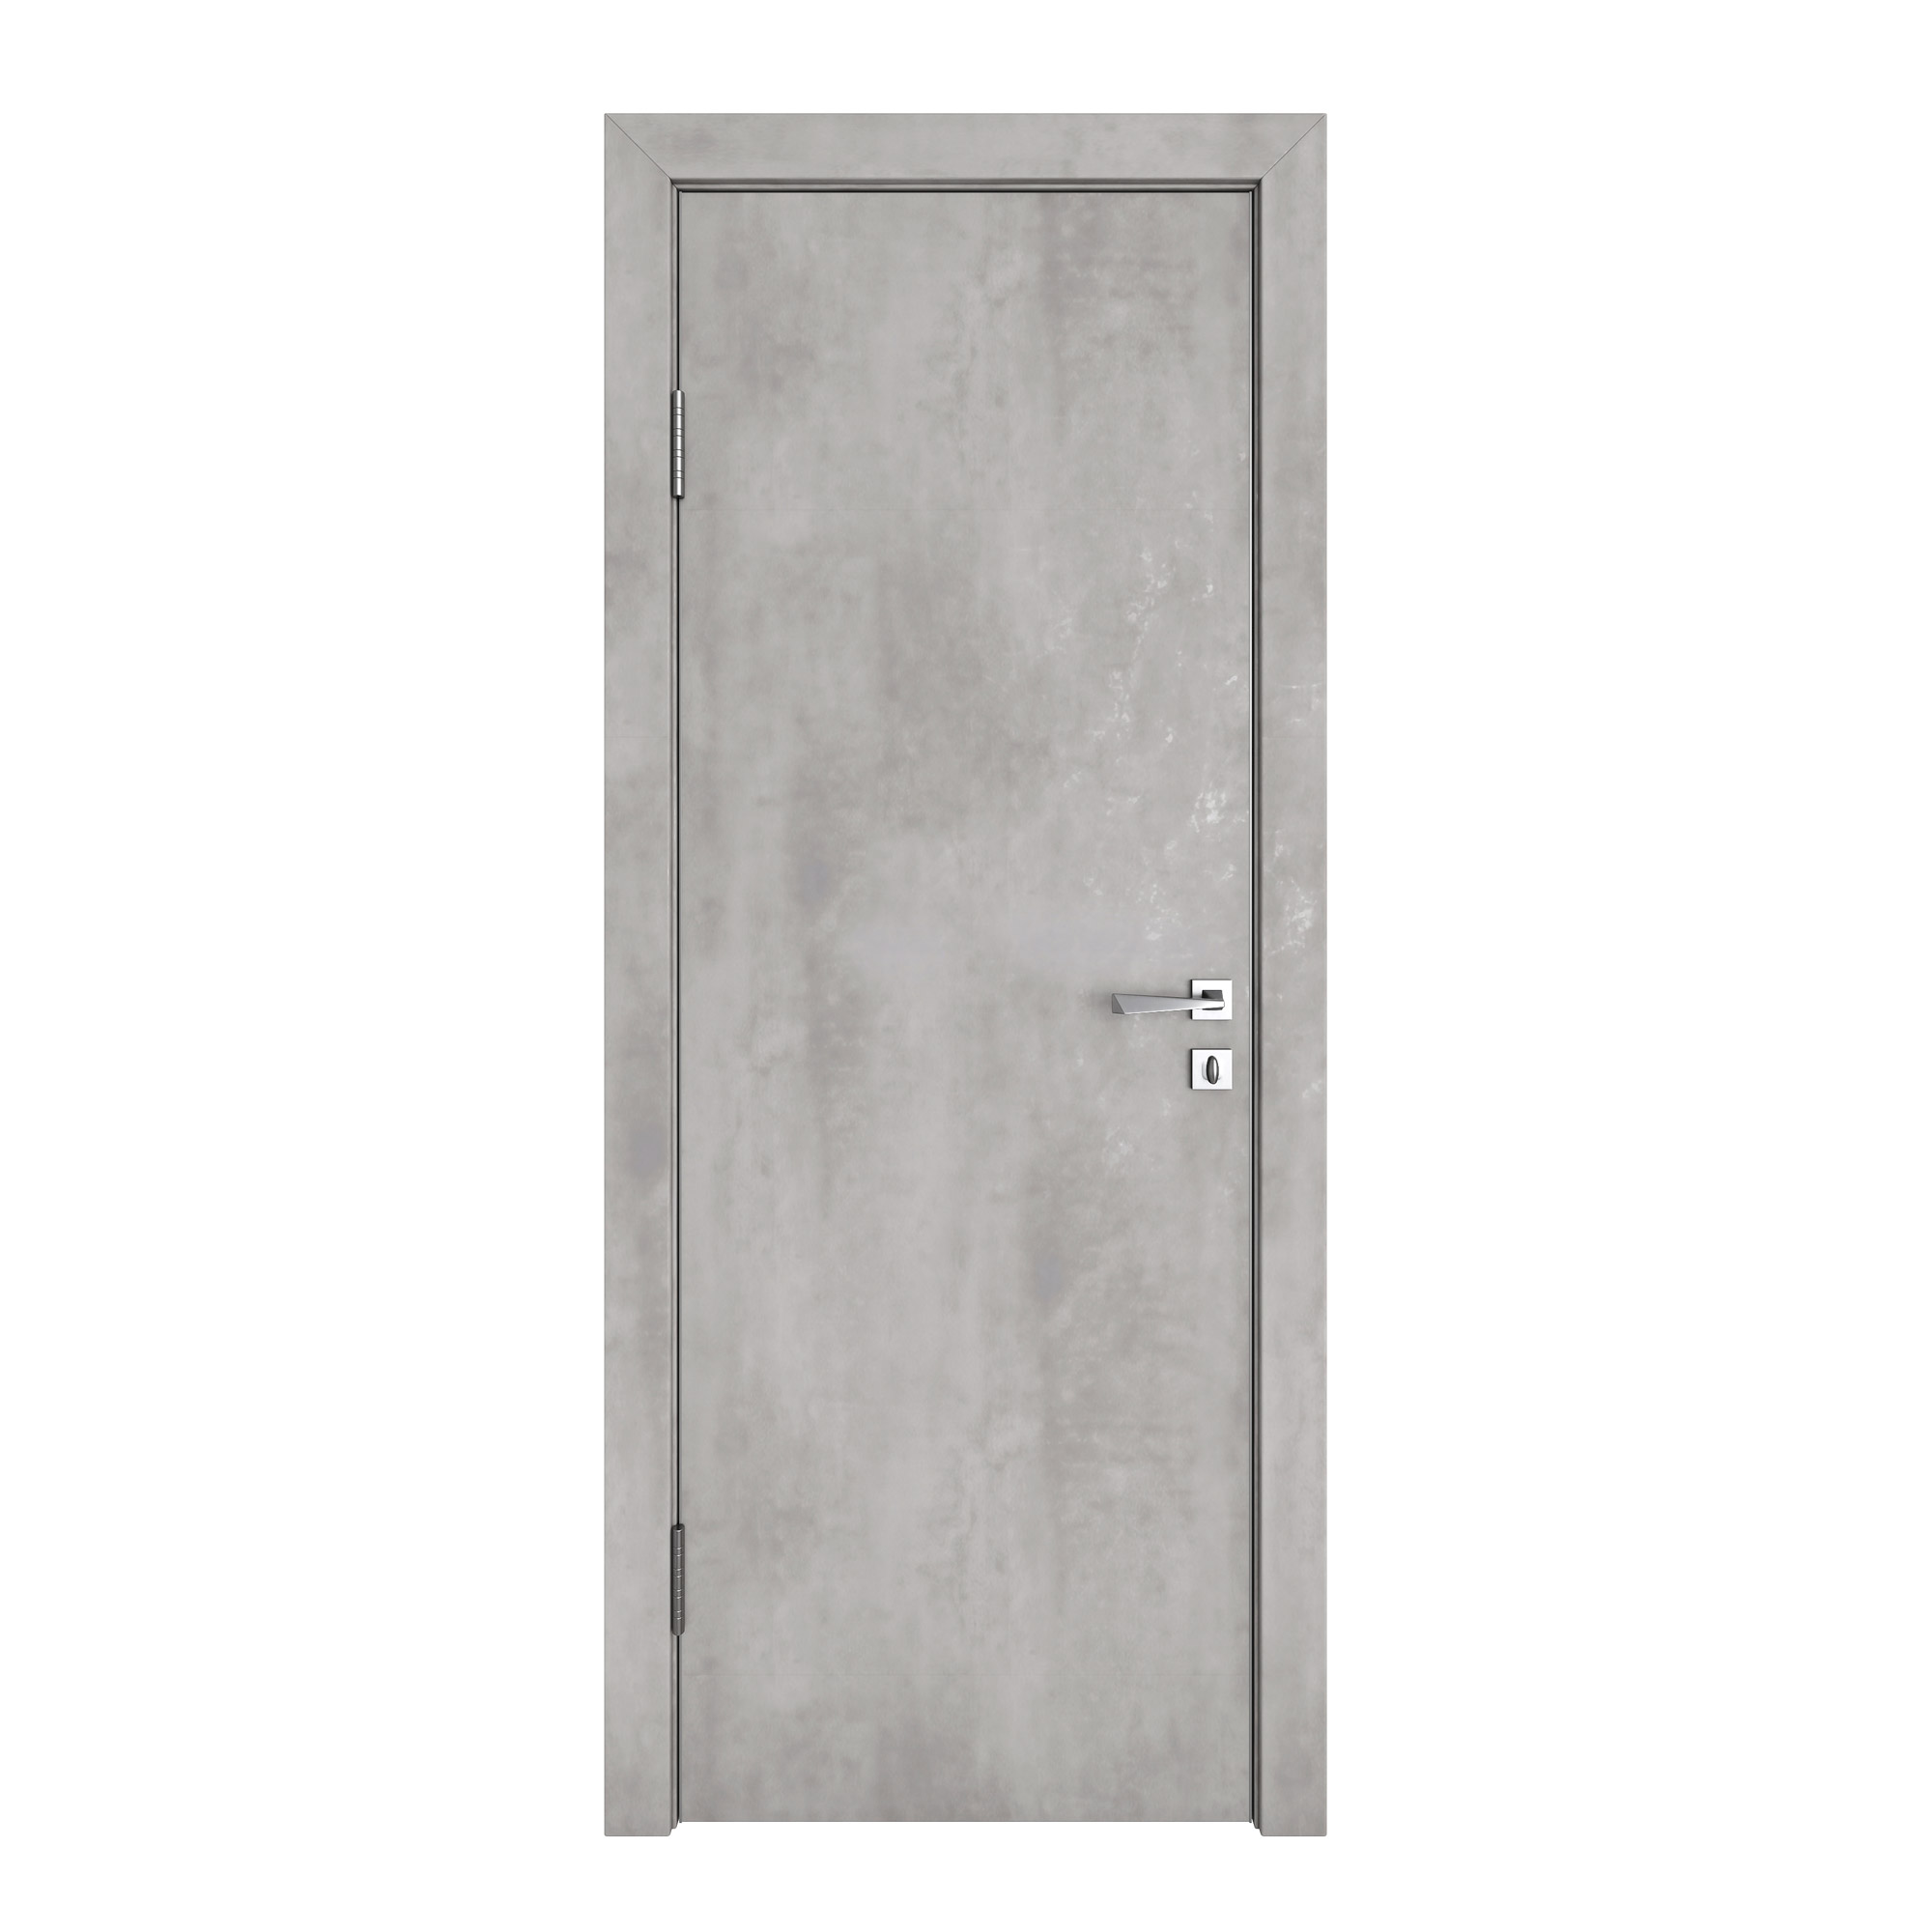 фото Межкомнатная дверь дг-500/2 бетон светлый 200х90 дверная линия